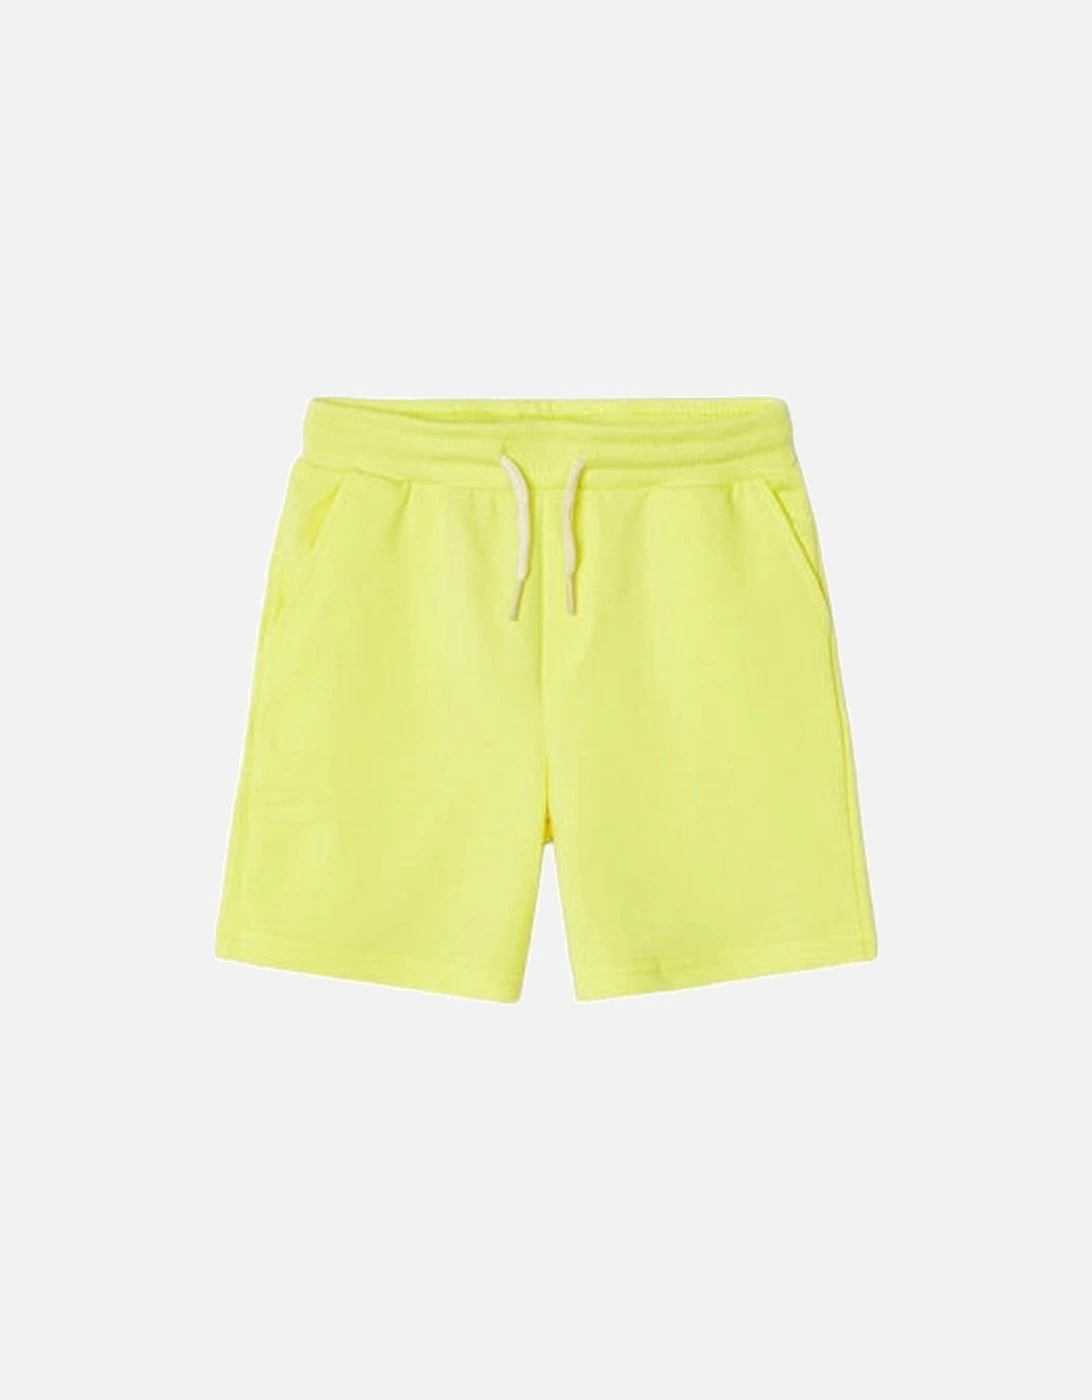 Lemon Jog Shorts, 4 of 3